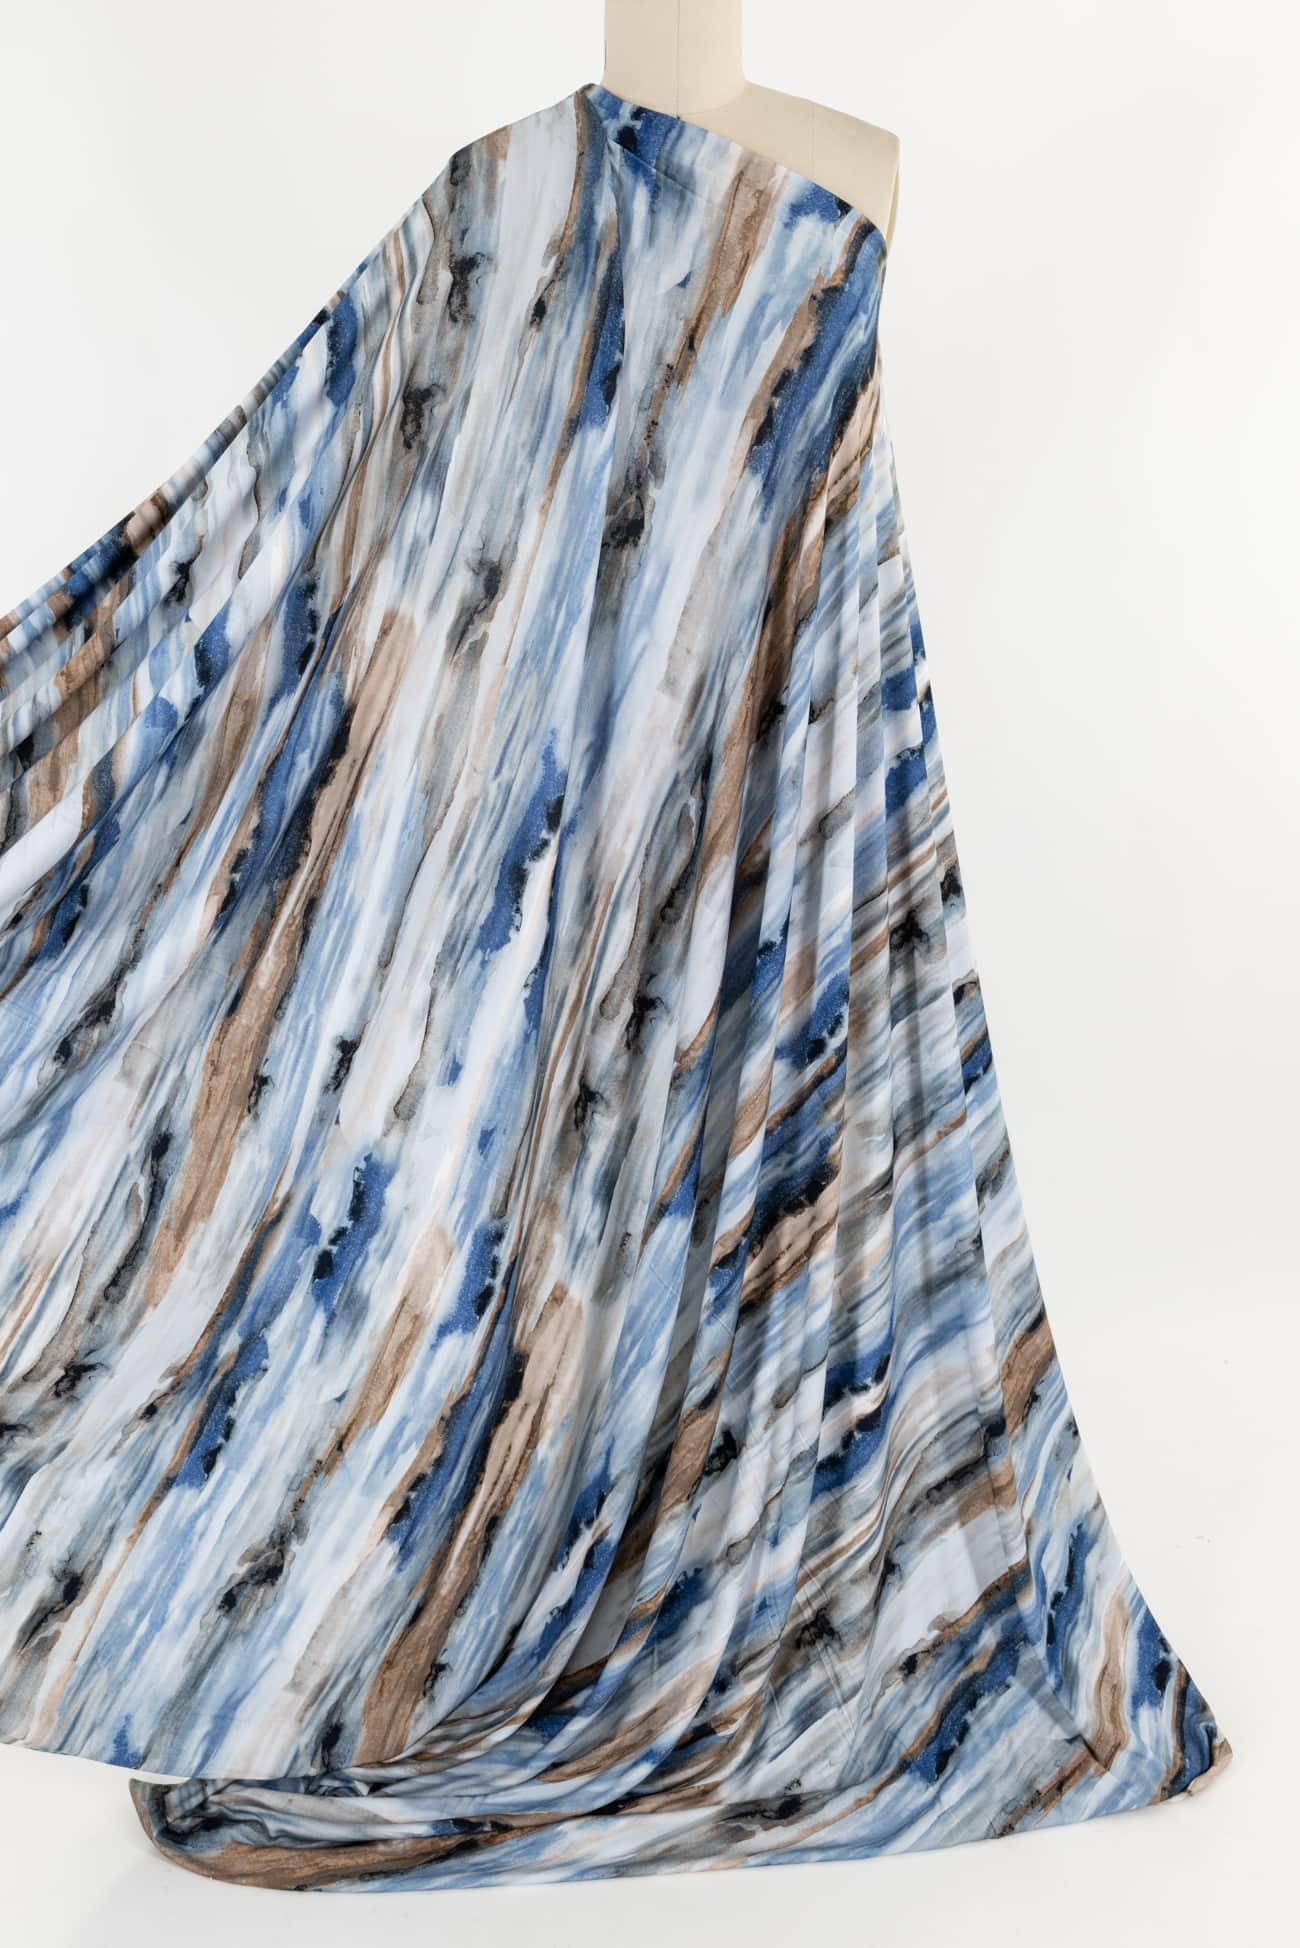 Arabella Viscose Knit – Marcy Tilton Fabrics